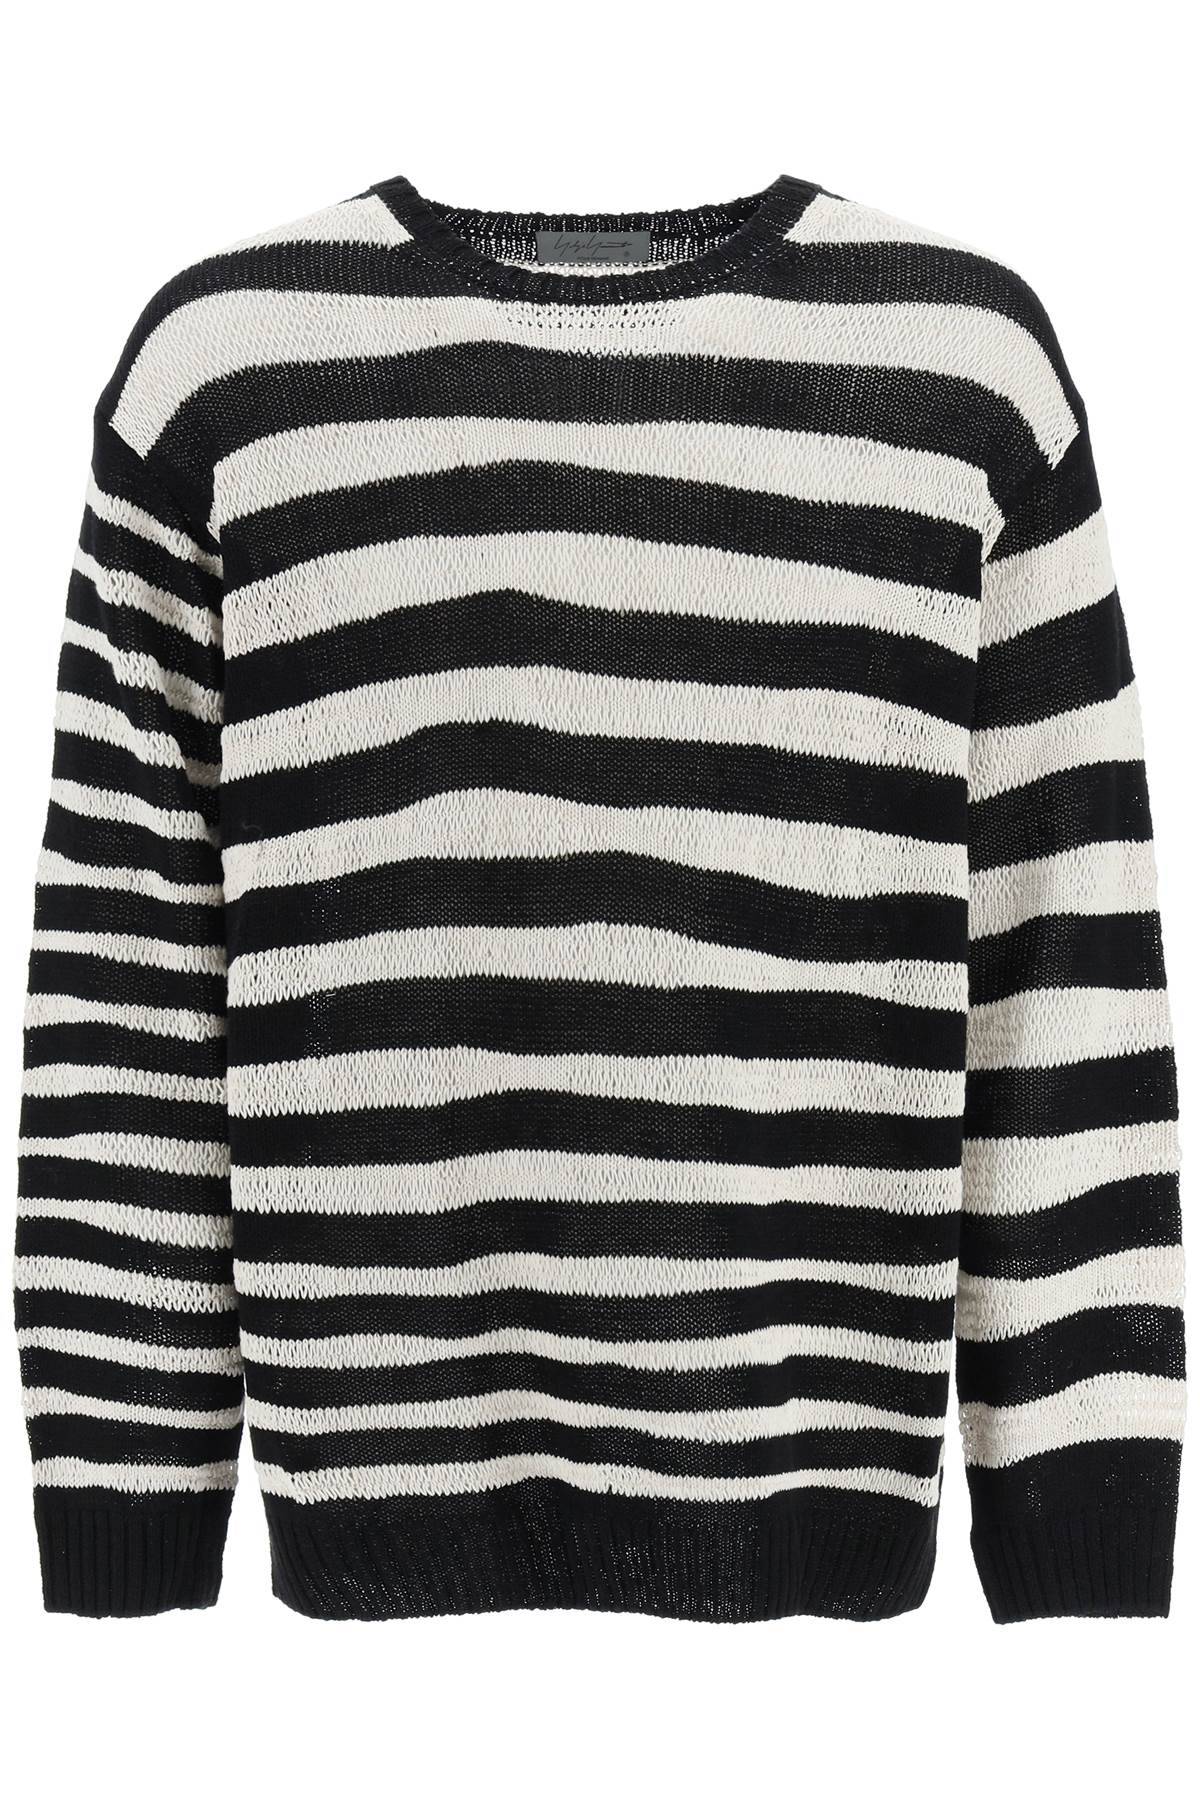 Yohji Yamamoto YOHJI YAMAMOTO striped pure cotton sweater